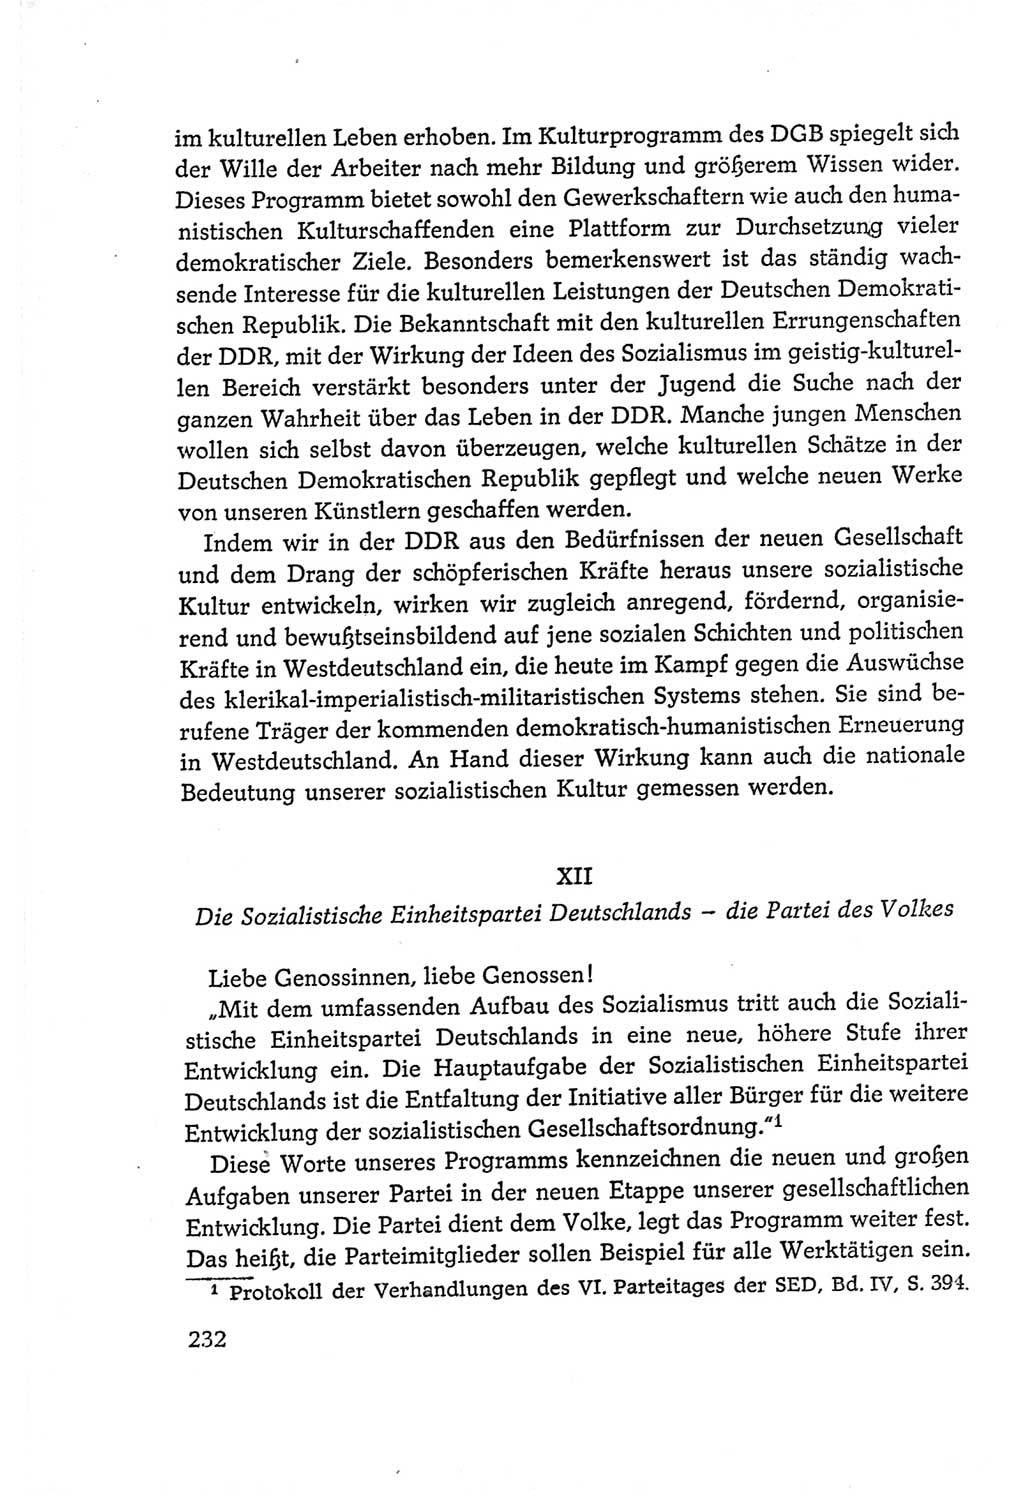 Protokoll der Verhandlungen des Ⅵ. Parteitages der Sozialistischen Einheitspartei Deutschlands (SED) [Deutsche Demokratische Republik (DDR)] 1963, Band Ⅰ, Seite 232 (Prot. Verh. Ⅵ. PT SED DDR 1963, Bd. Ⅰ, S. 232)